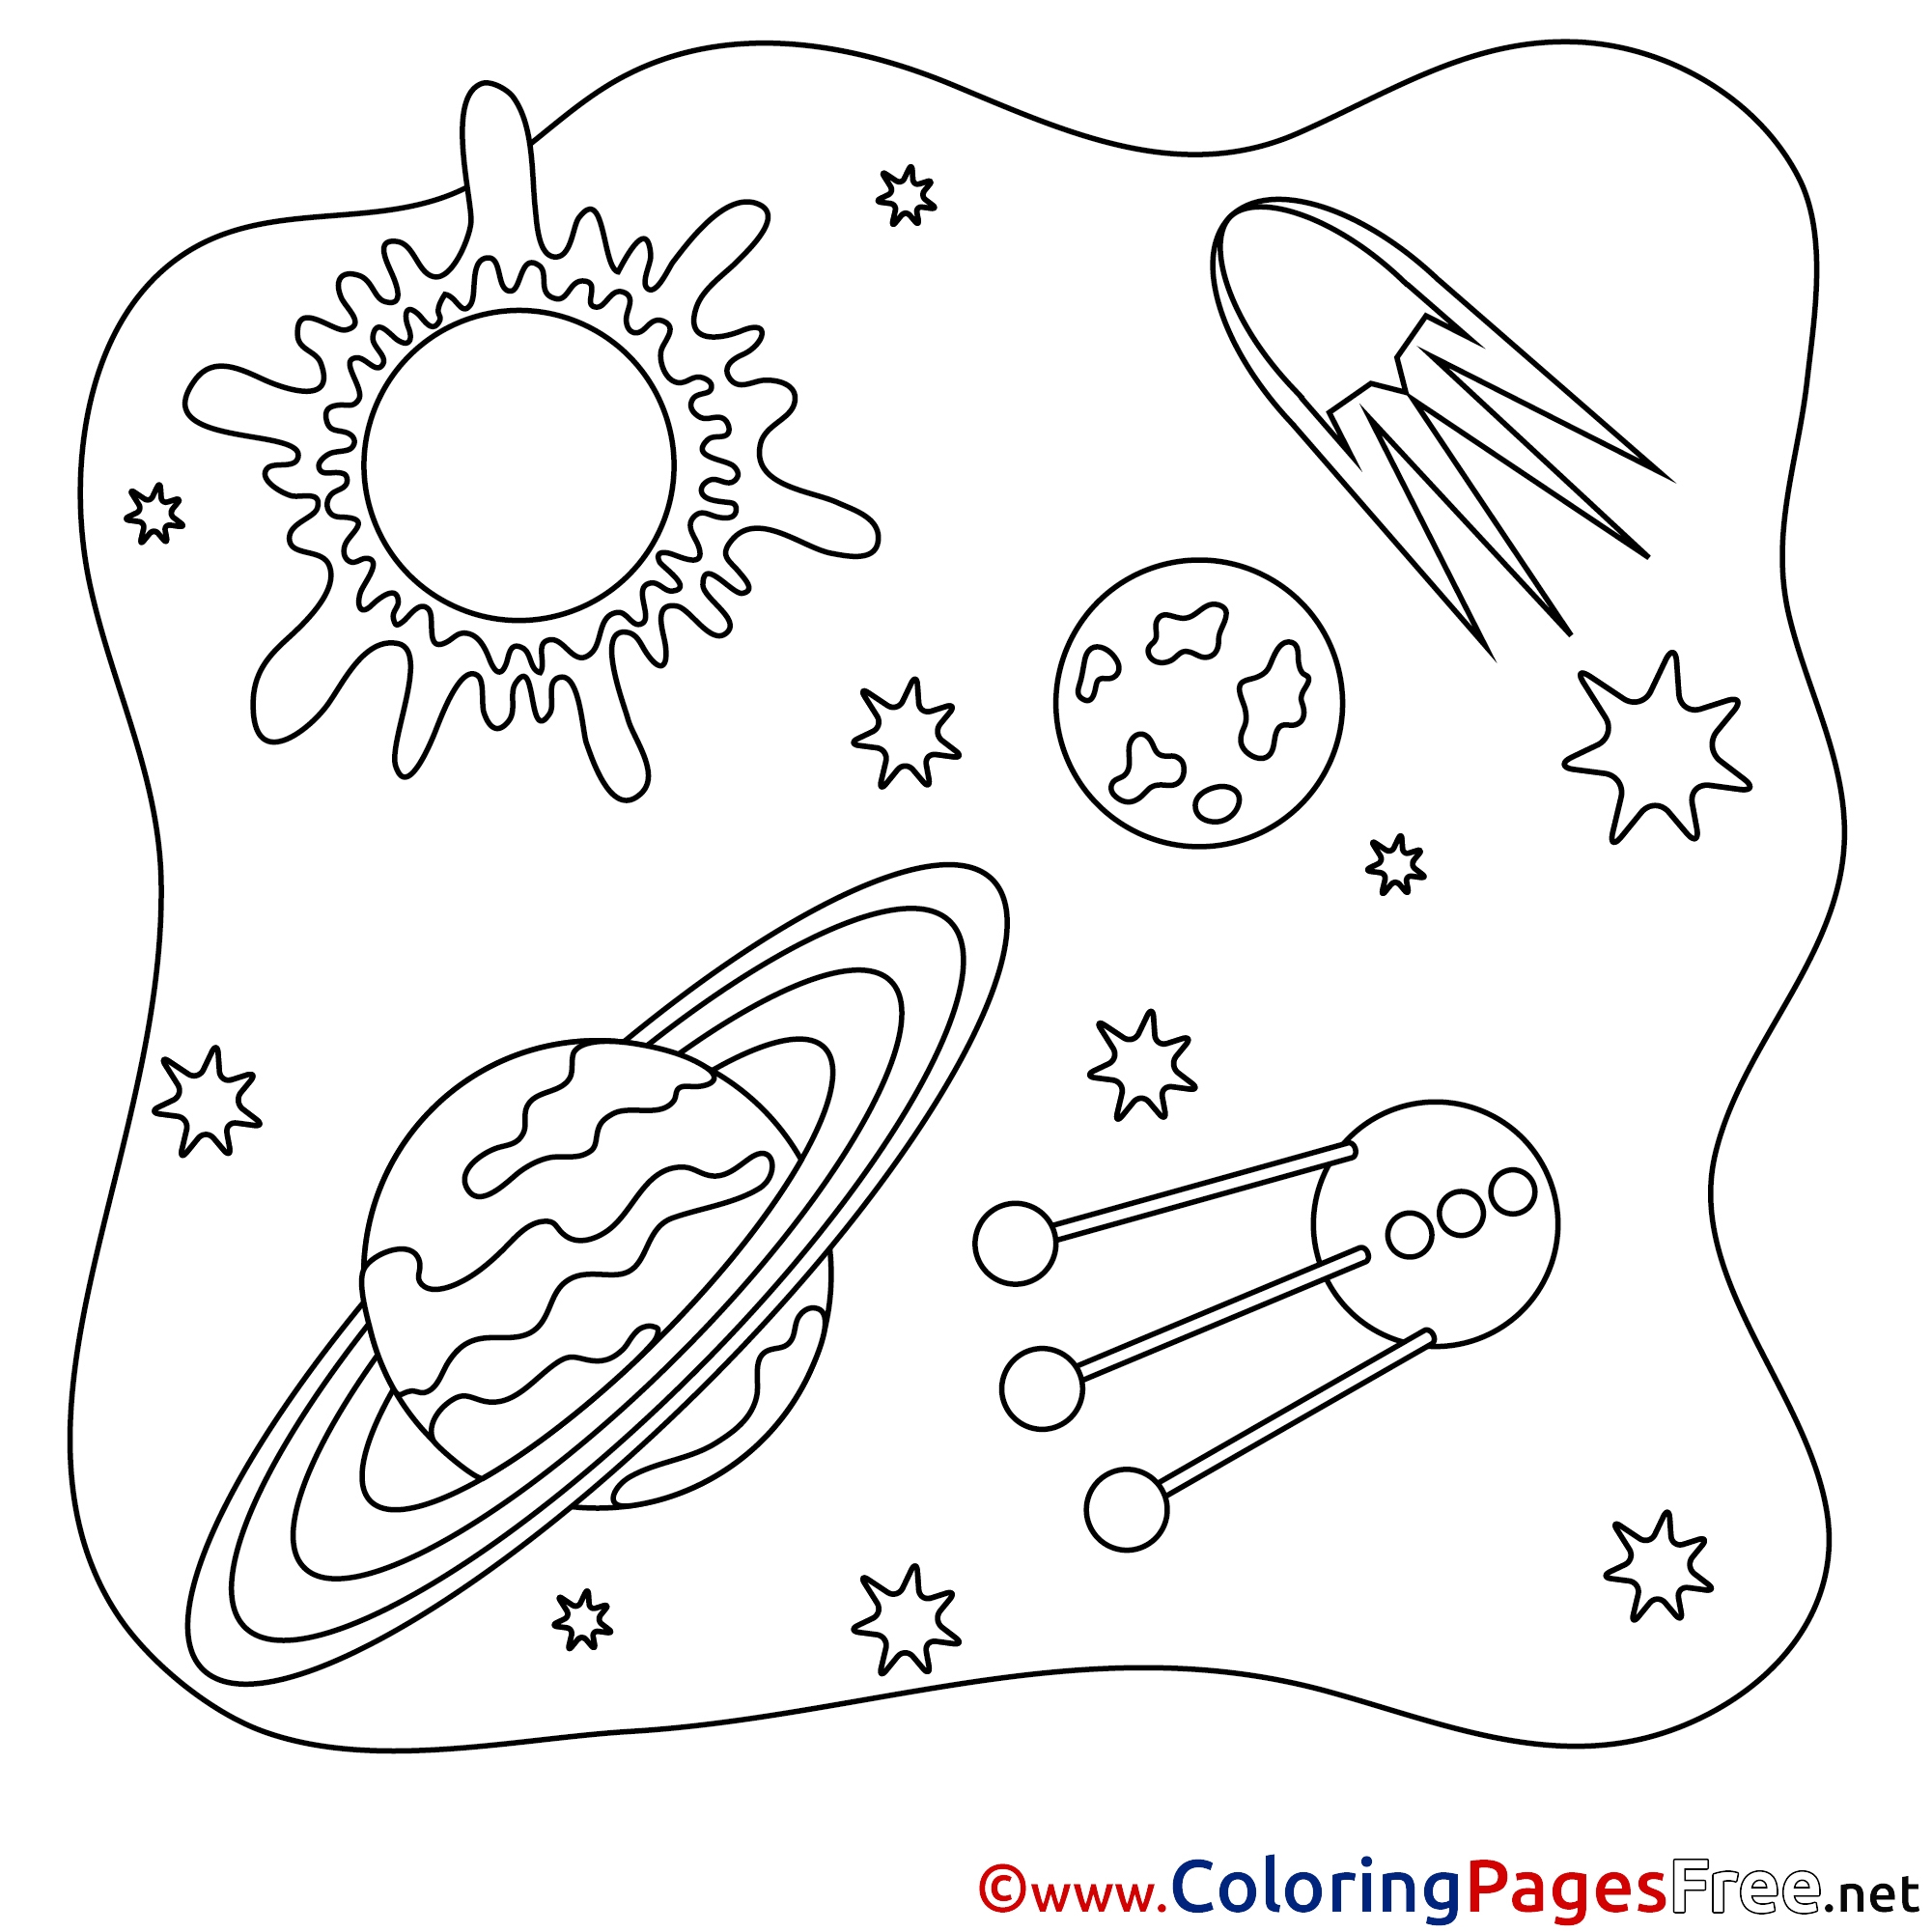 Раскраска космос для детей 3 4. Космос раскраска для детей. Раскраска космос и планеты. Раскраска космос и планеты для детей. Раскраски космос для дошкольников.